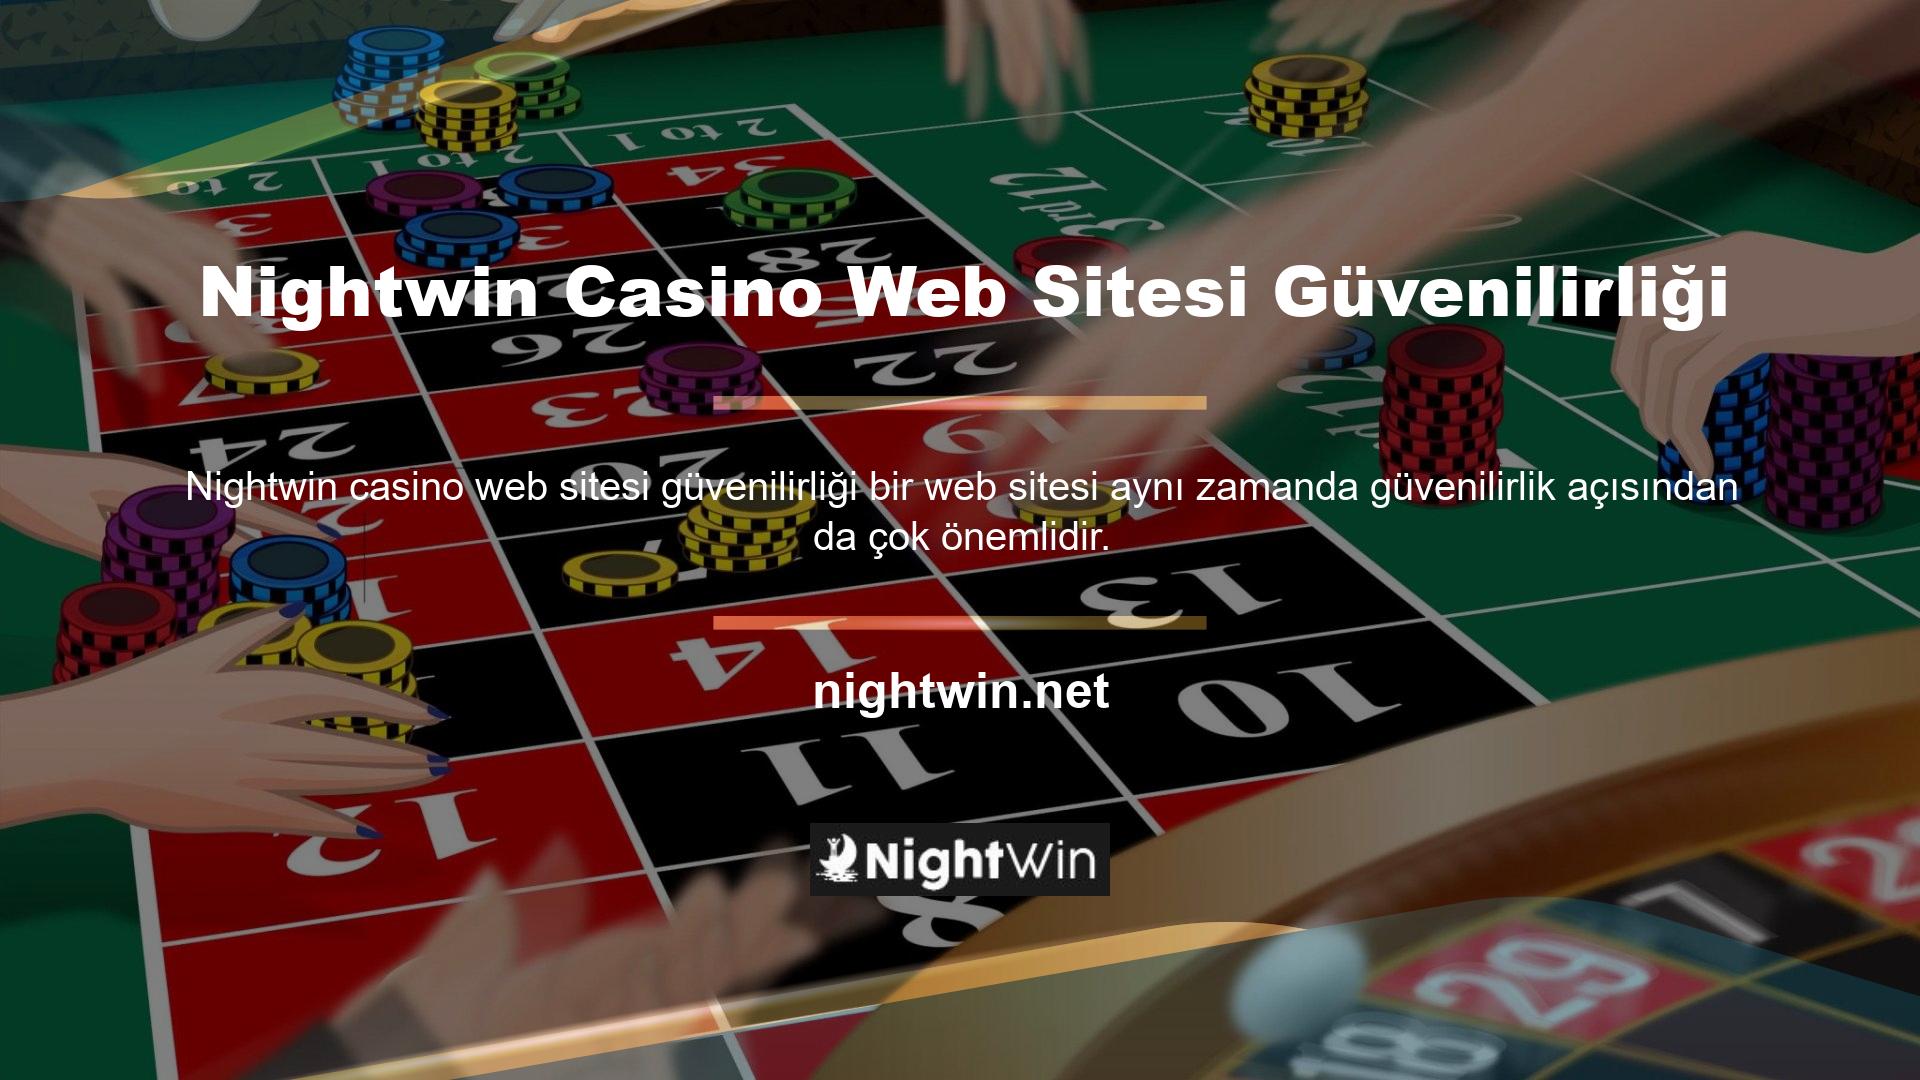 Nightwin Casino Web Sitesi Nightwin Para Yatırma ve Çekme Nightwin Casino web sitesi, orijinalliği koruma konusunda oldukça güvenilirdir